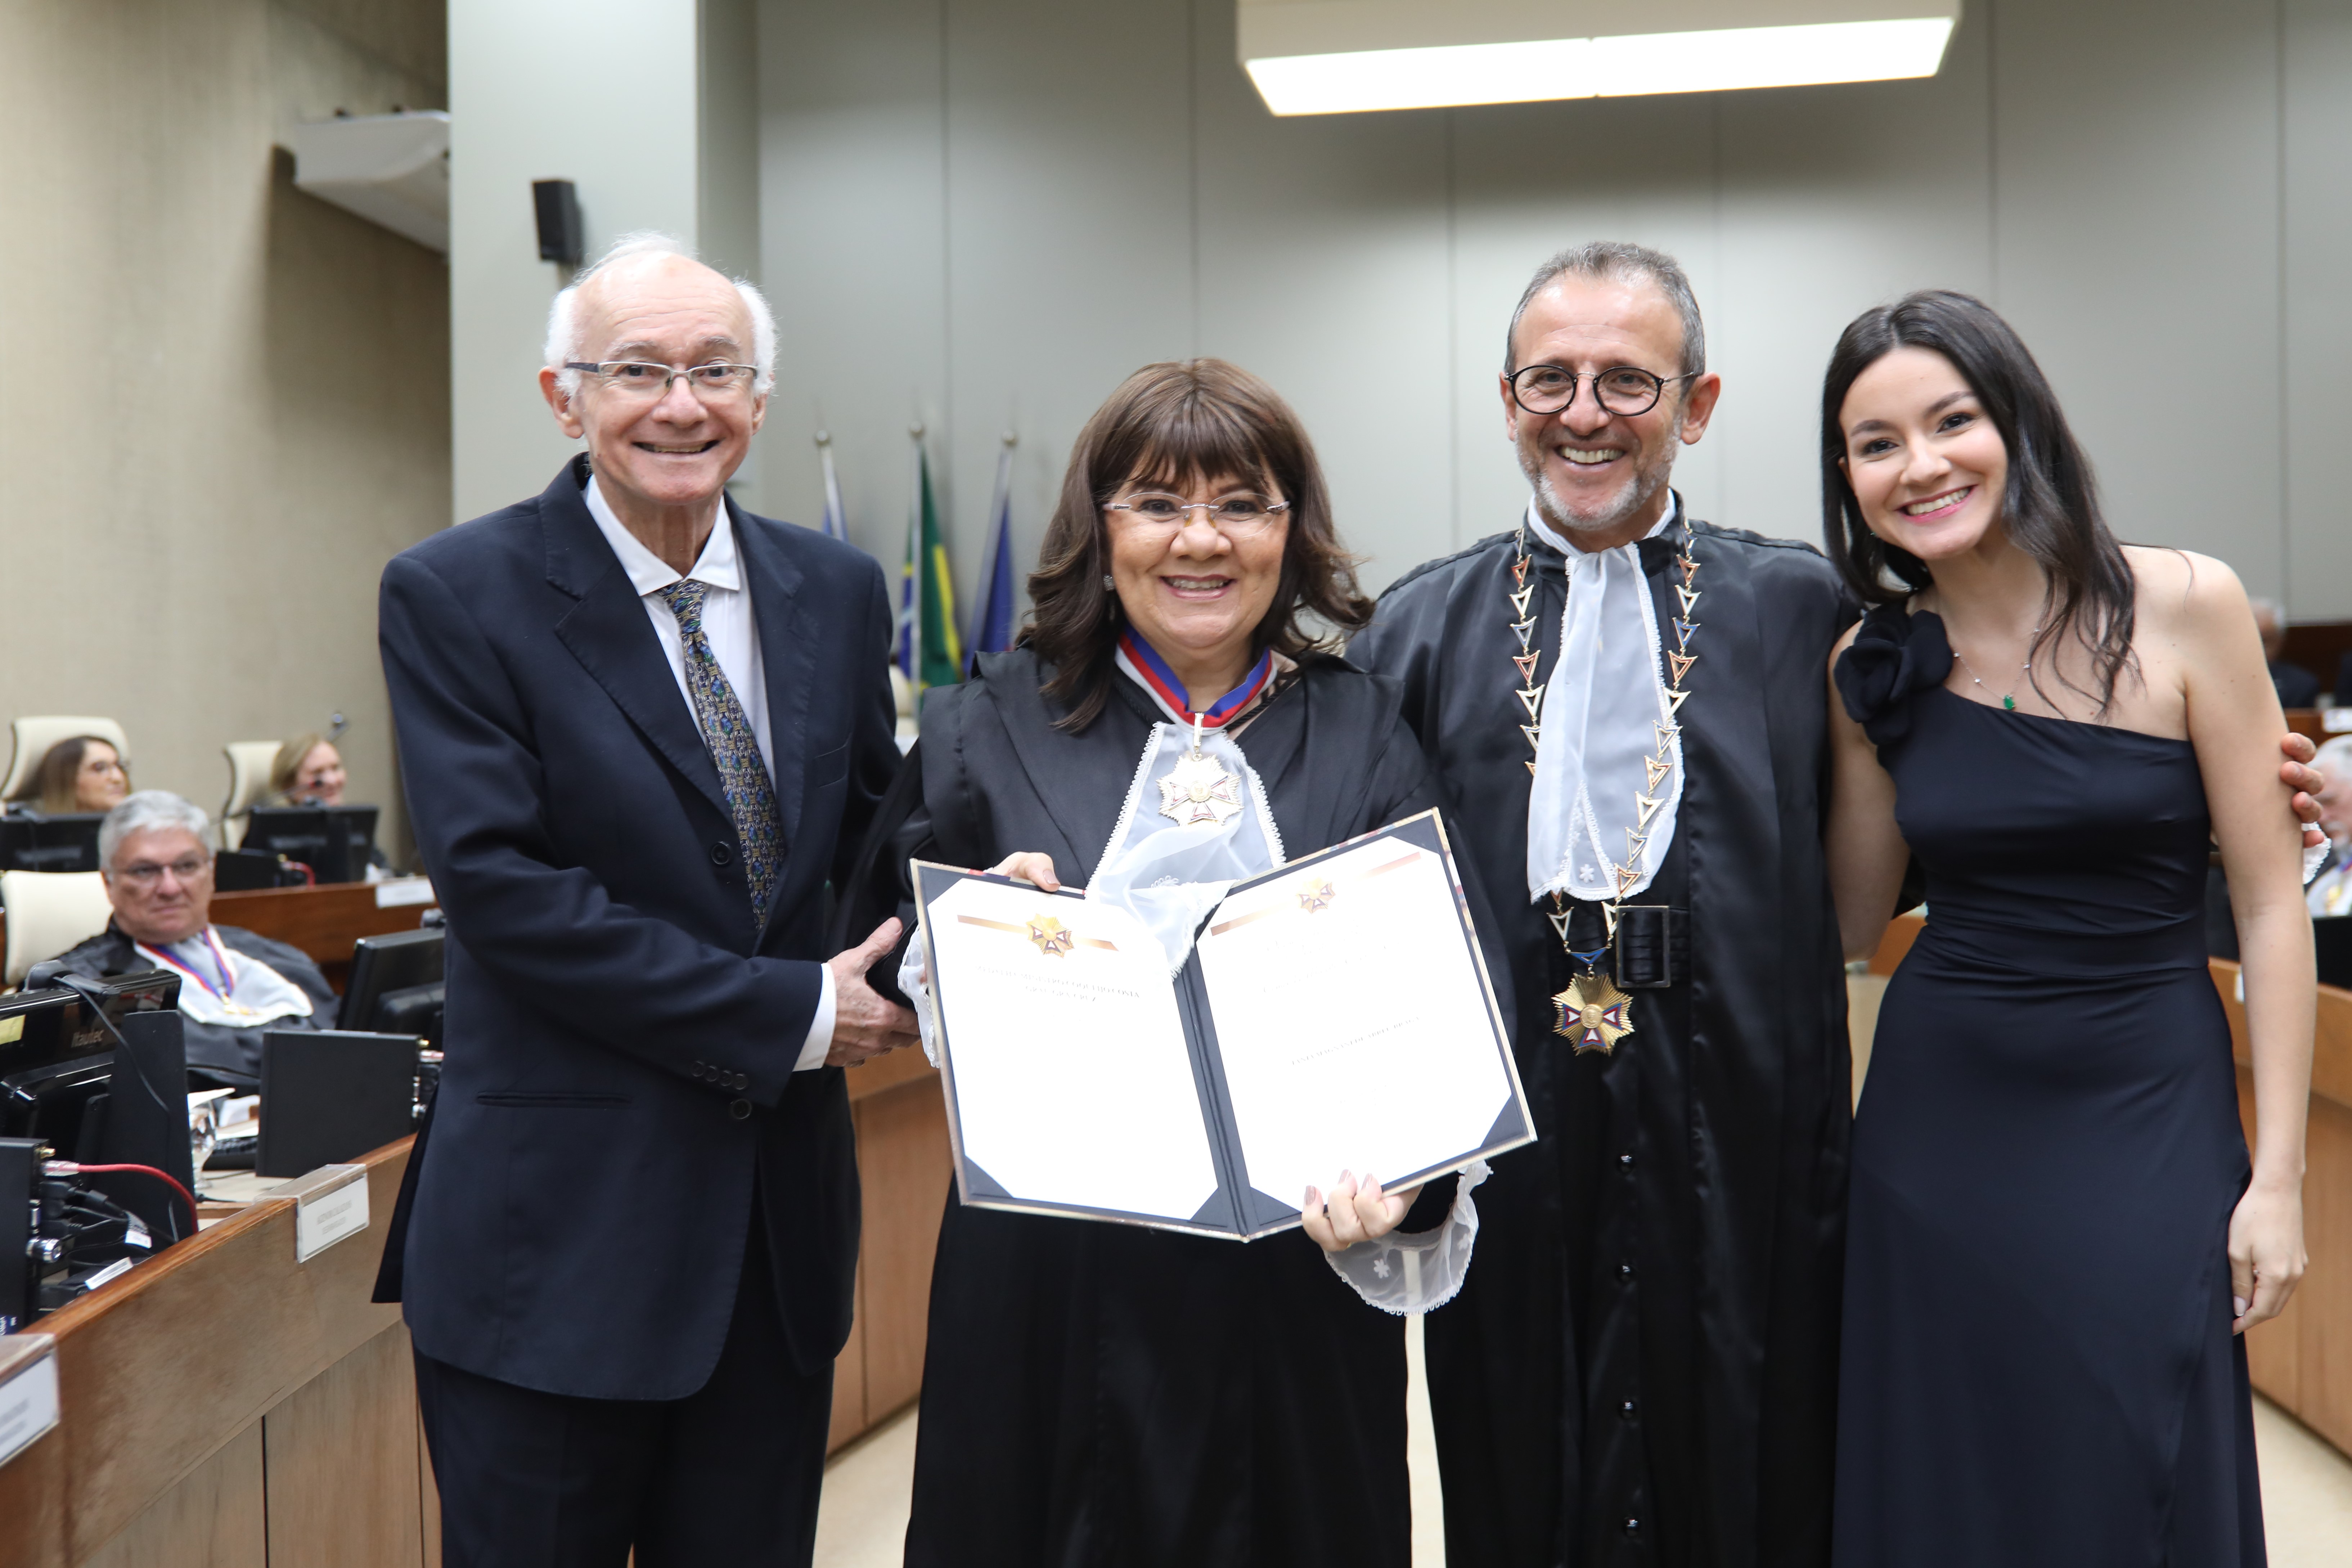  Desembargadora Tânia Magnani de Abreu Braga com o presidente do TRT-5 e sua família